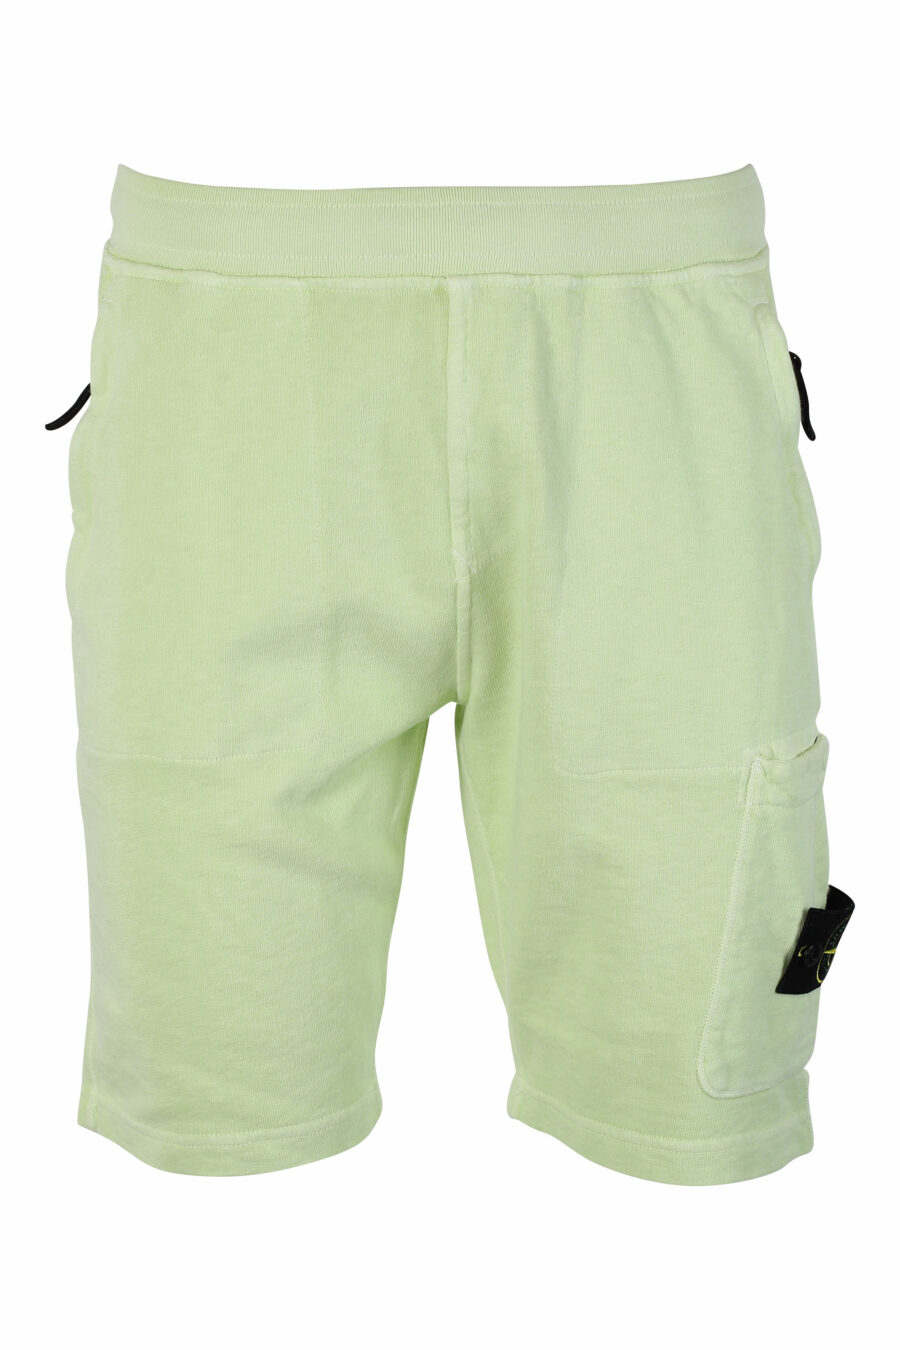 Pantalón de chándal corto verde claro con parche - IMG 9526